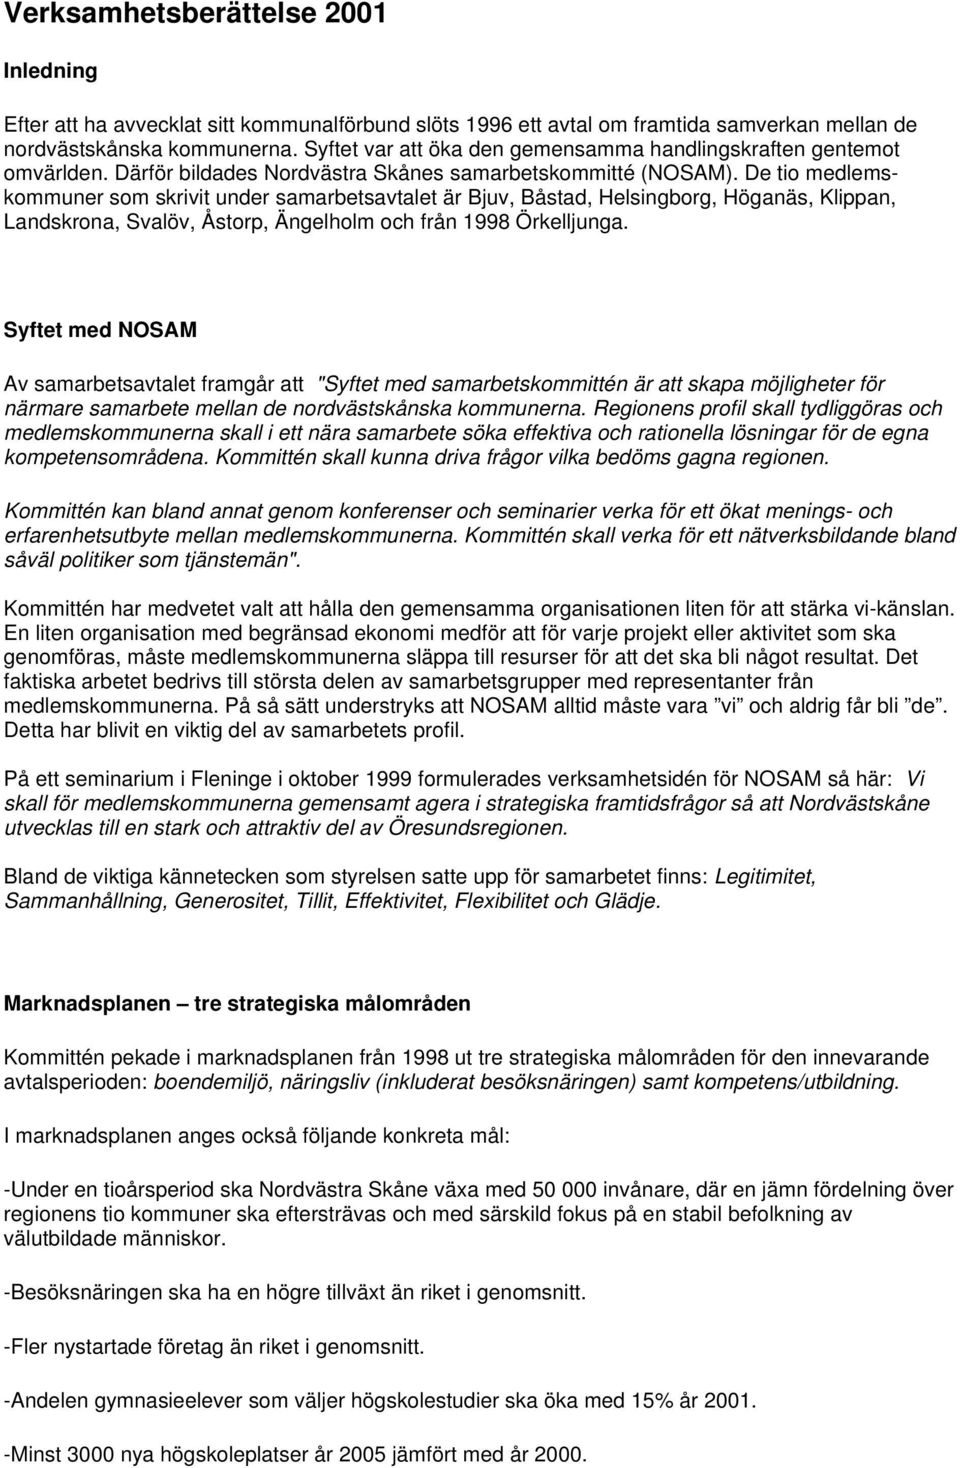 De tio medlemskommuner som skrivit under samarbetsavtalet är Bjuv, Båstad, Helsingborg, Höganäs, Klippan, Landskrona, Svalöv, Åstorp, Ängelholm och från 1998 Örkelljunga.